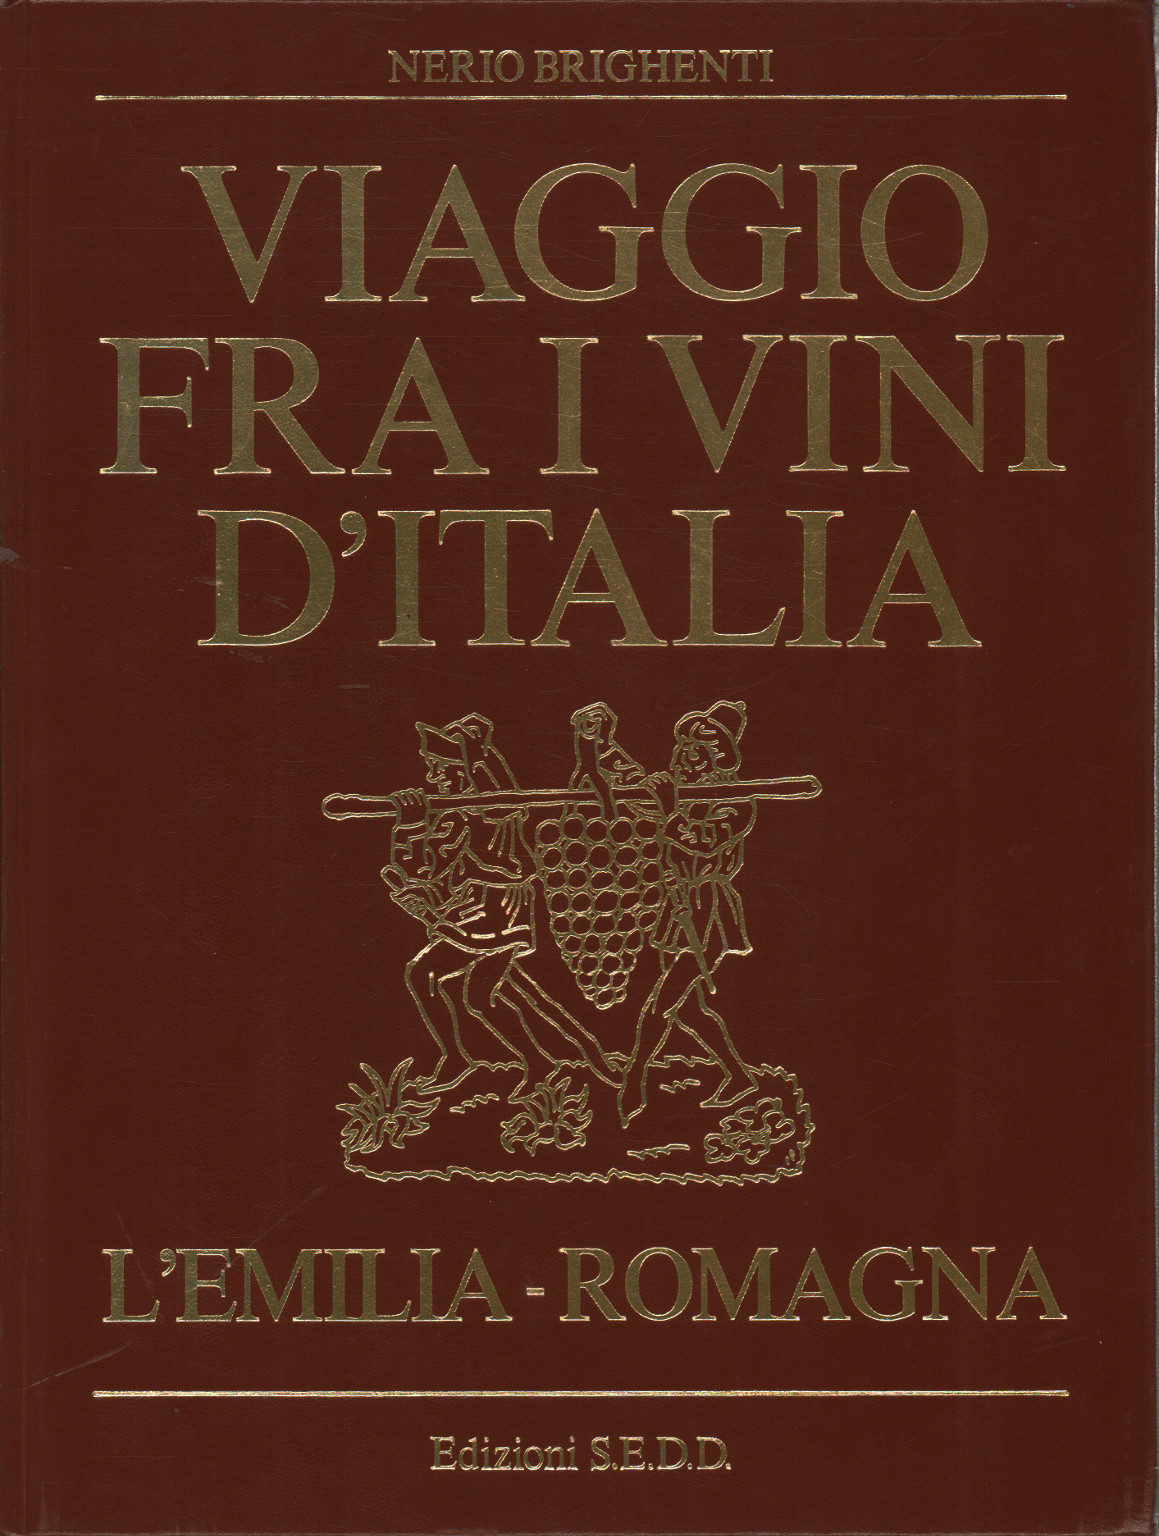 Viaje a través de los vinos de la región de Emilia-Romagna, Nerio Brighenti